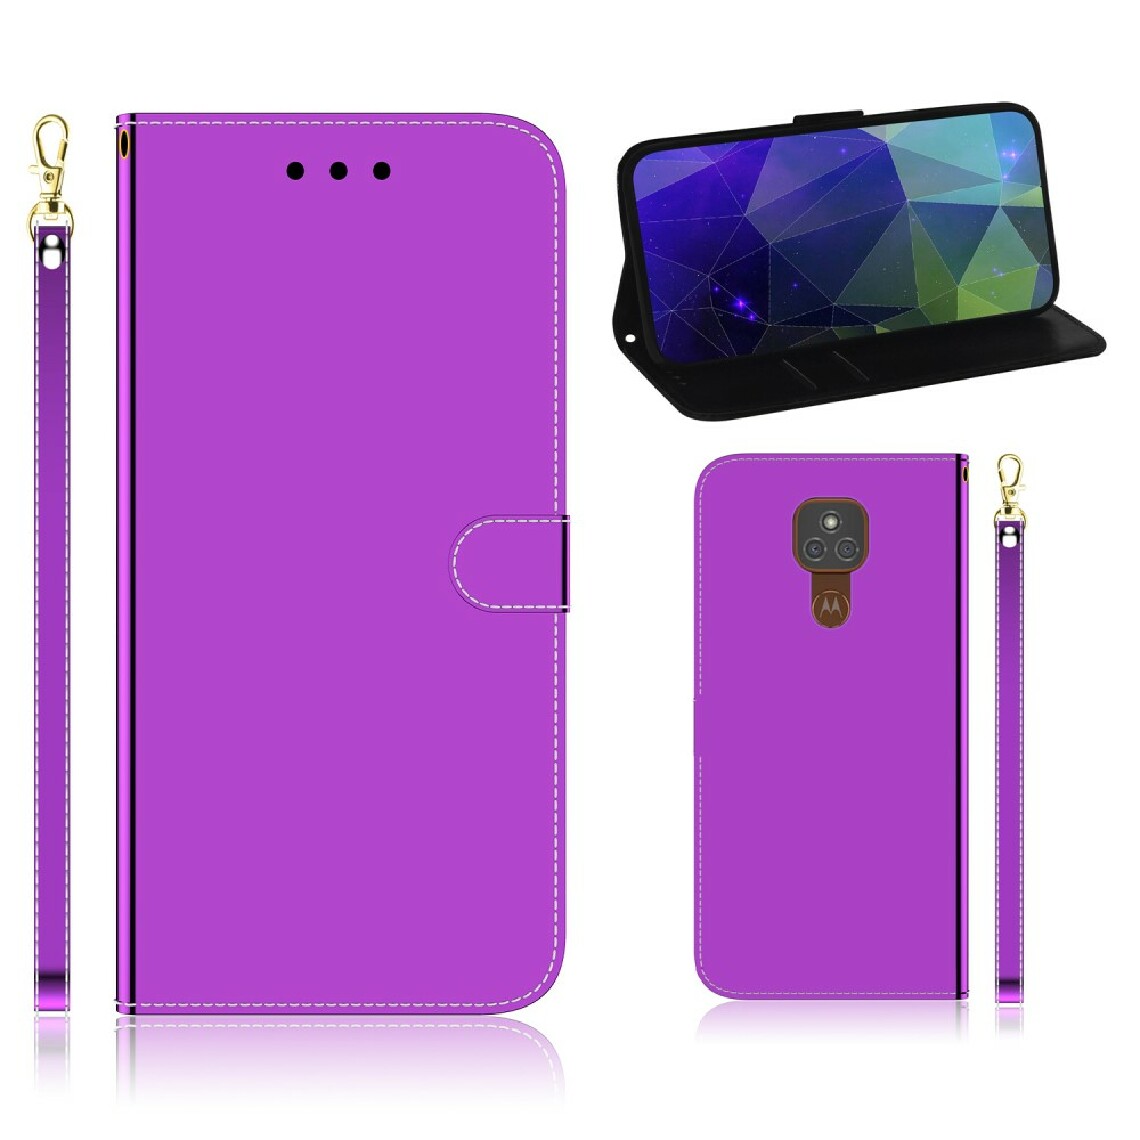 Other - Etui en PU surface semblable à un miroir avec support violet pour votre Motorola Moto G9 Play/Moto E7 Plus - Coque, étui smartphone